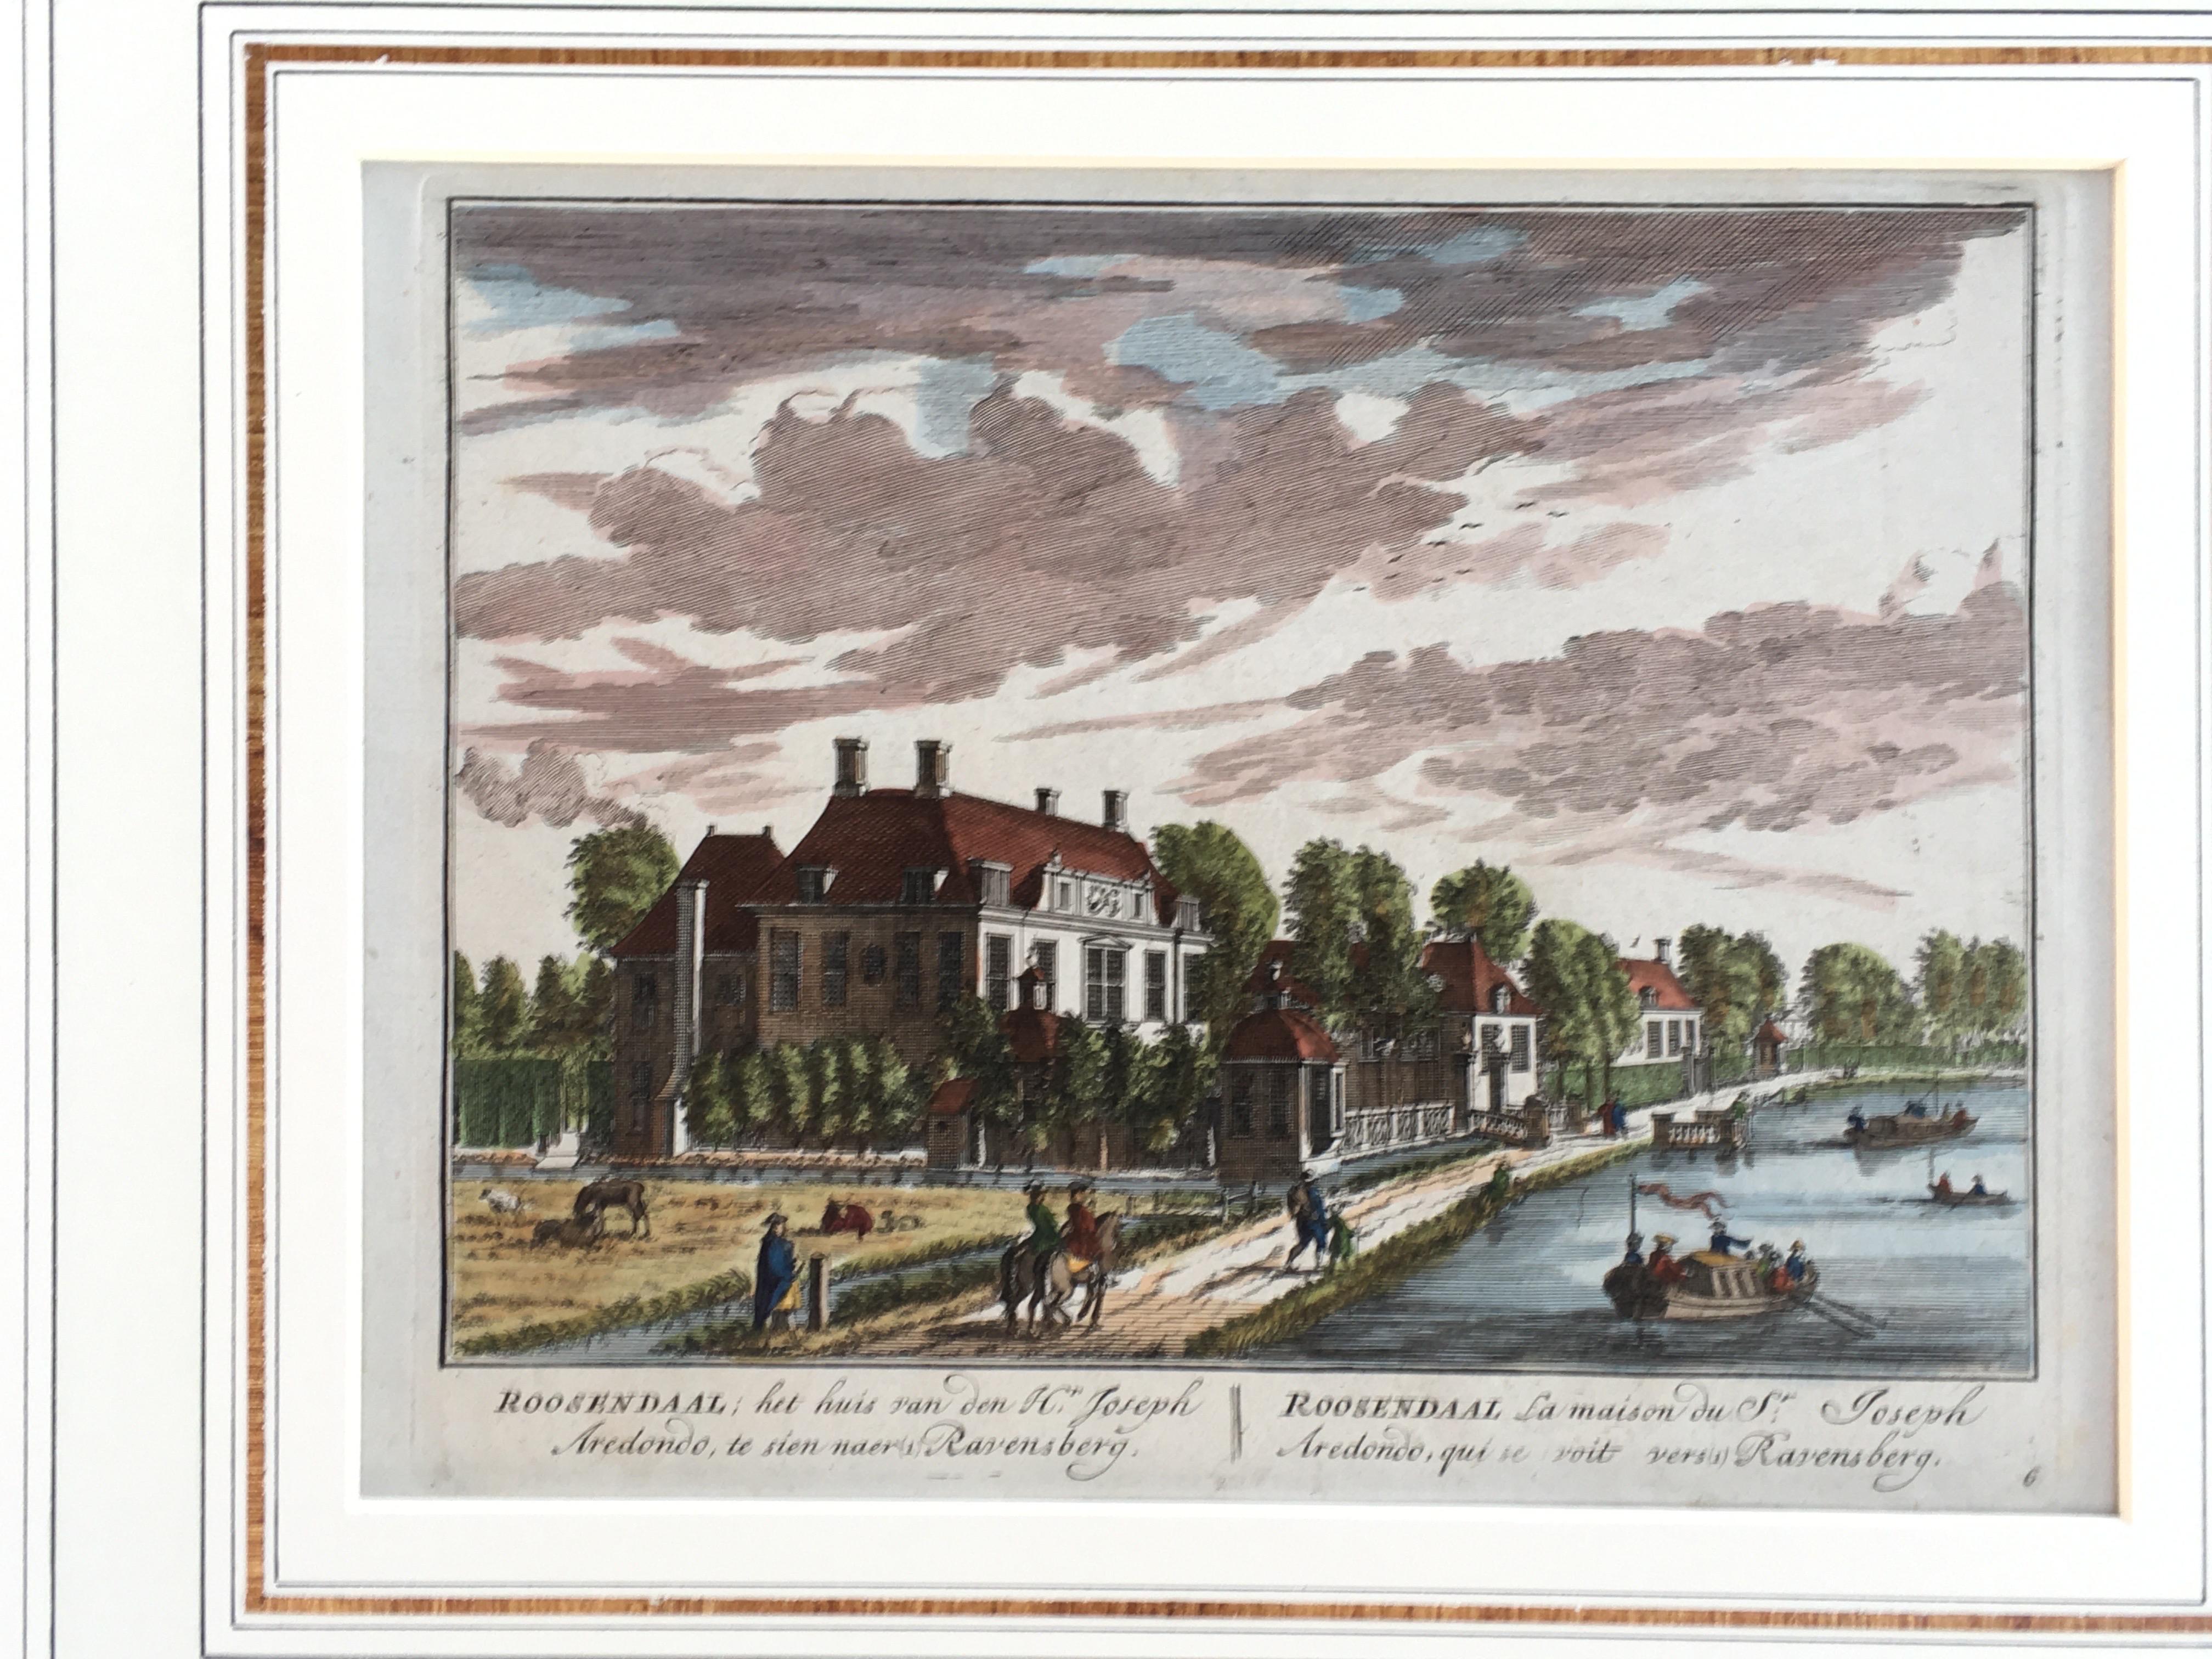 Und Stich gedruckt in Holland im Jahre 1710 von Lambert Visseher von einem prominenten Palm Springs, CA Estate... Dieses charmante Bild zeigt ein Viertel in Holland, das am Rande eines Flusses (oder Sees) liegt. Dieses Bild wurde nach dem